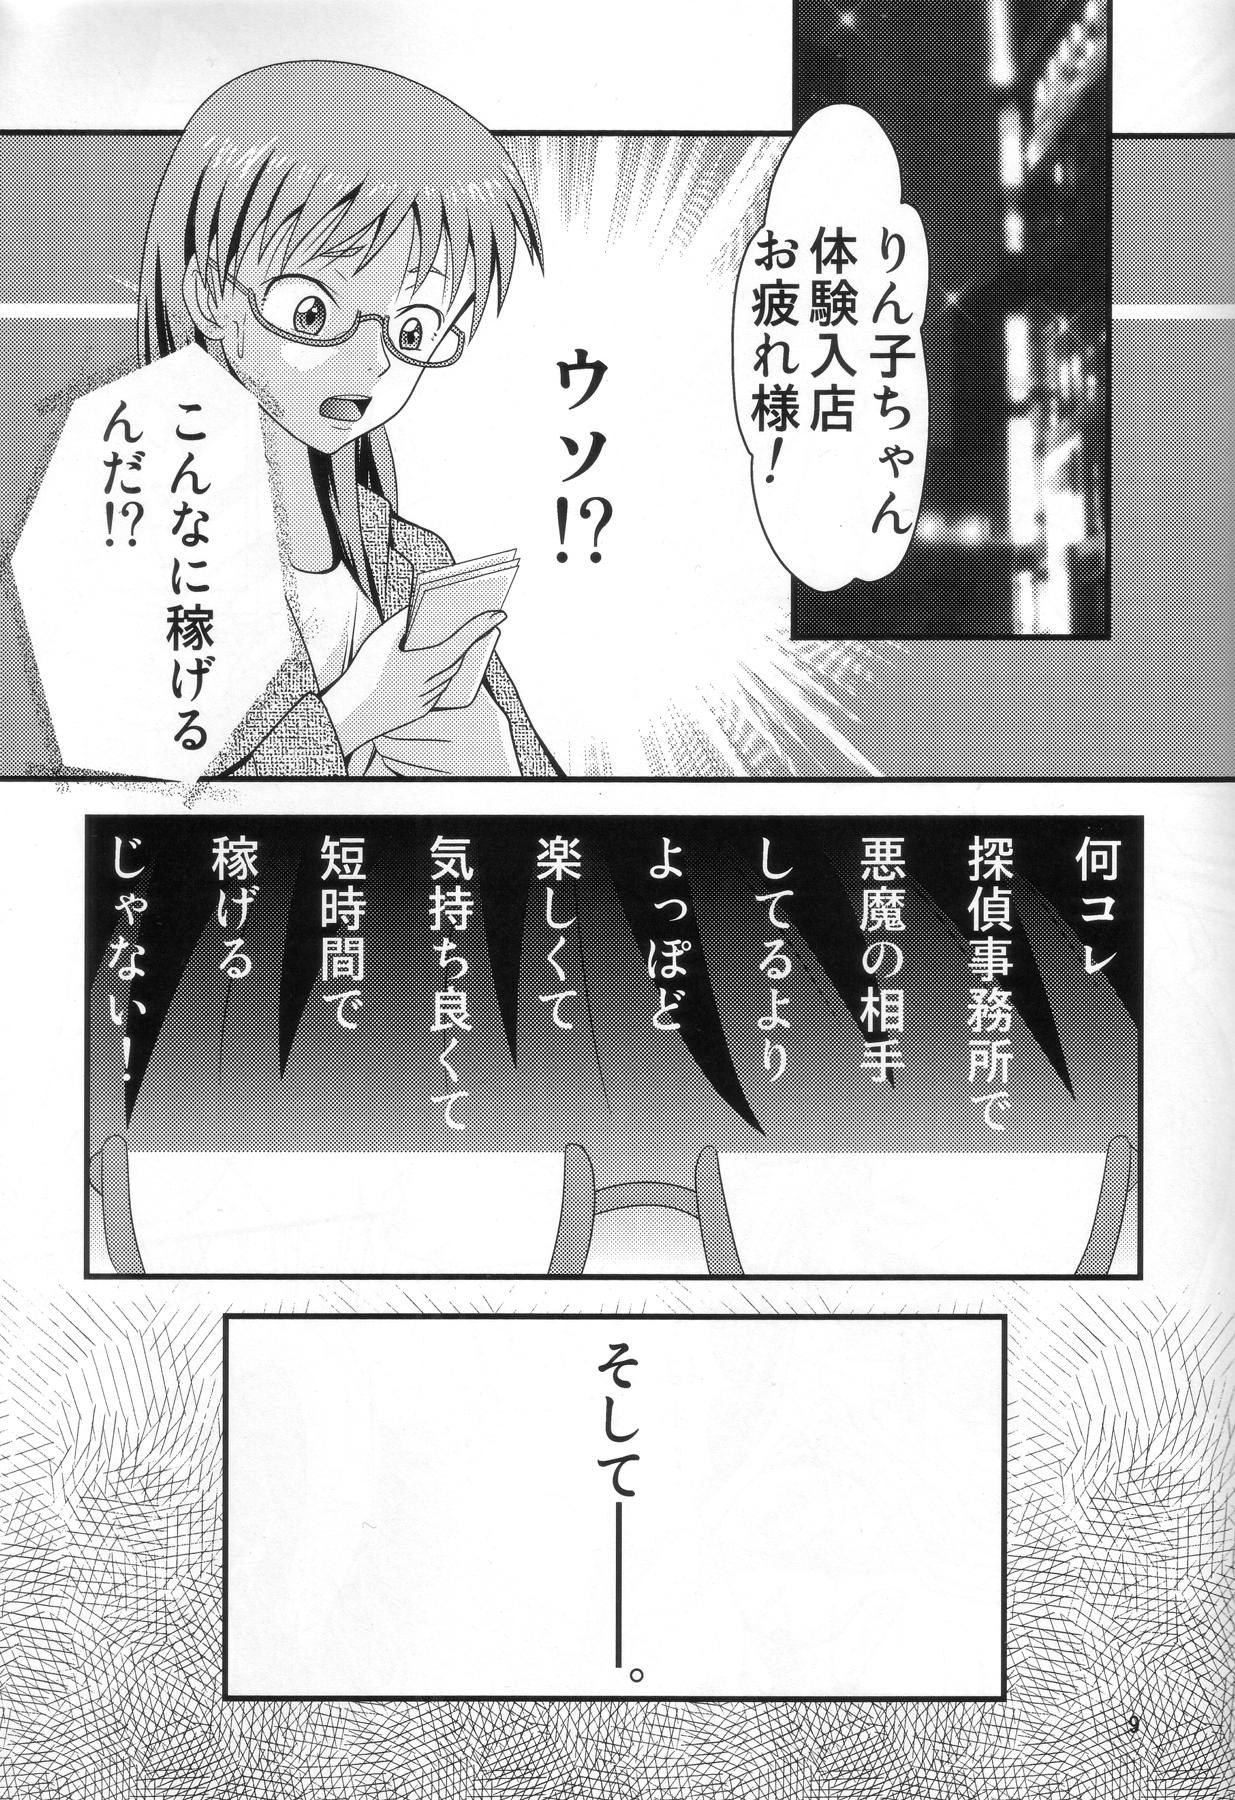 Leggings 七変化ですよ、佐隈さん。 - Yondemasuyo azazel-san Firsttime - Page 8